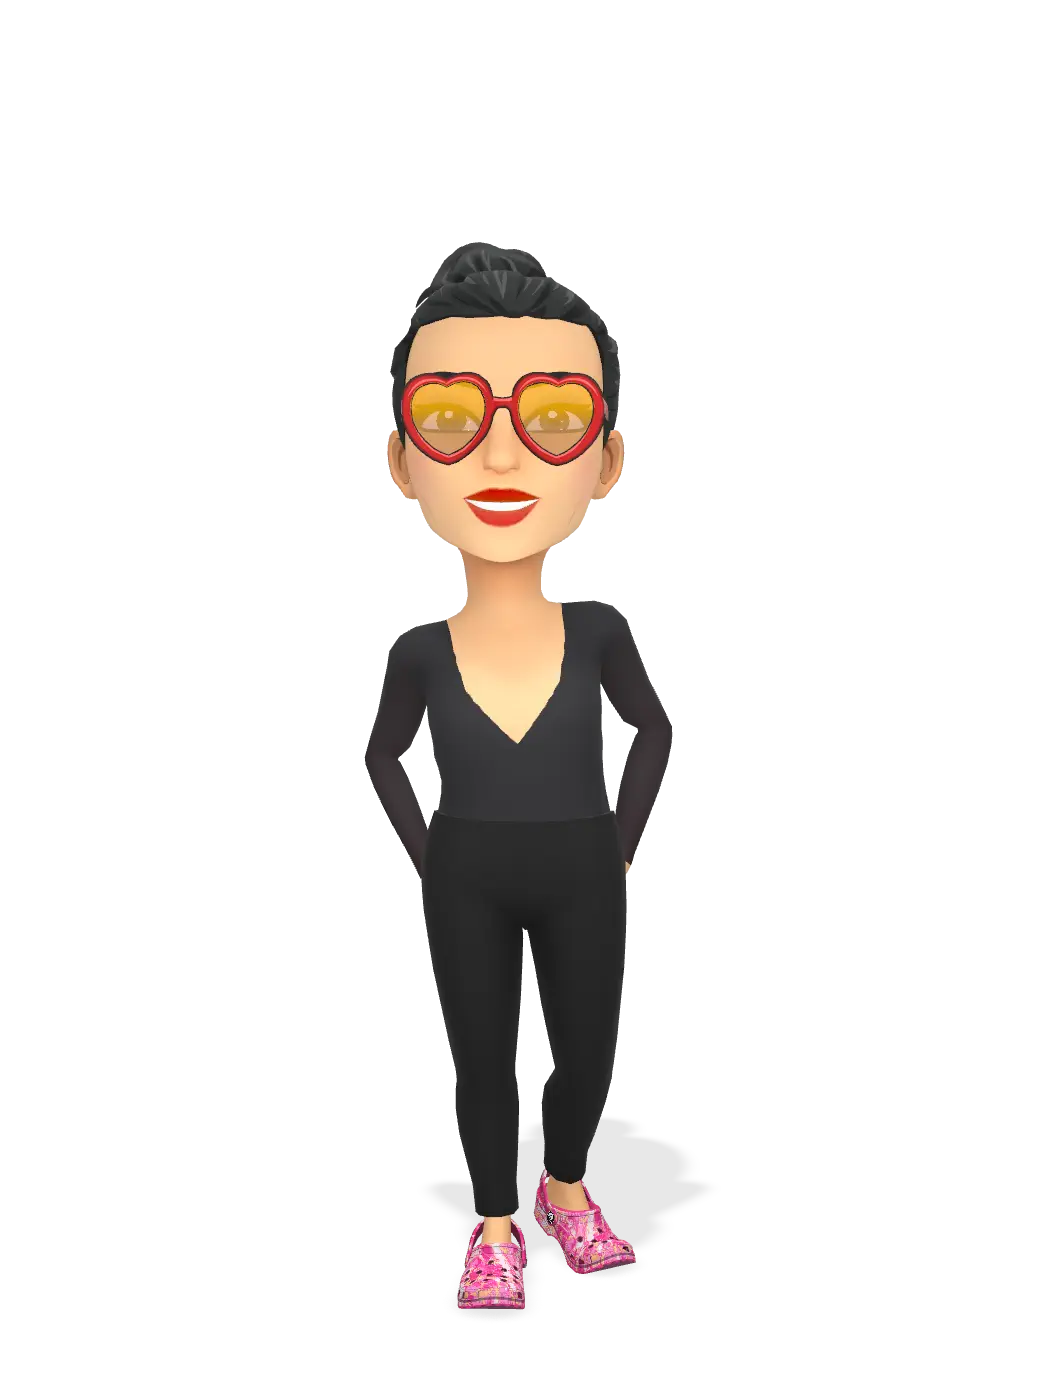 3D Bitmoji for michellevisage avatar